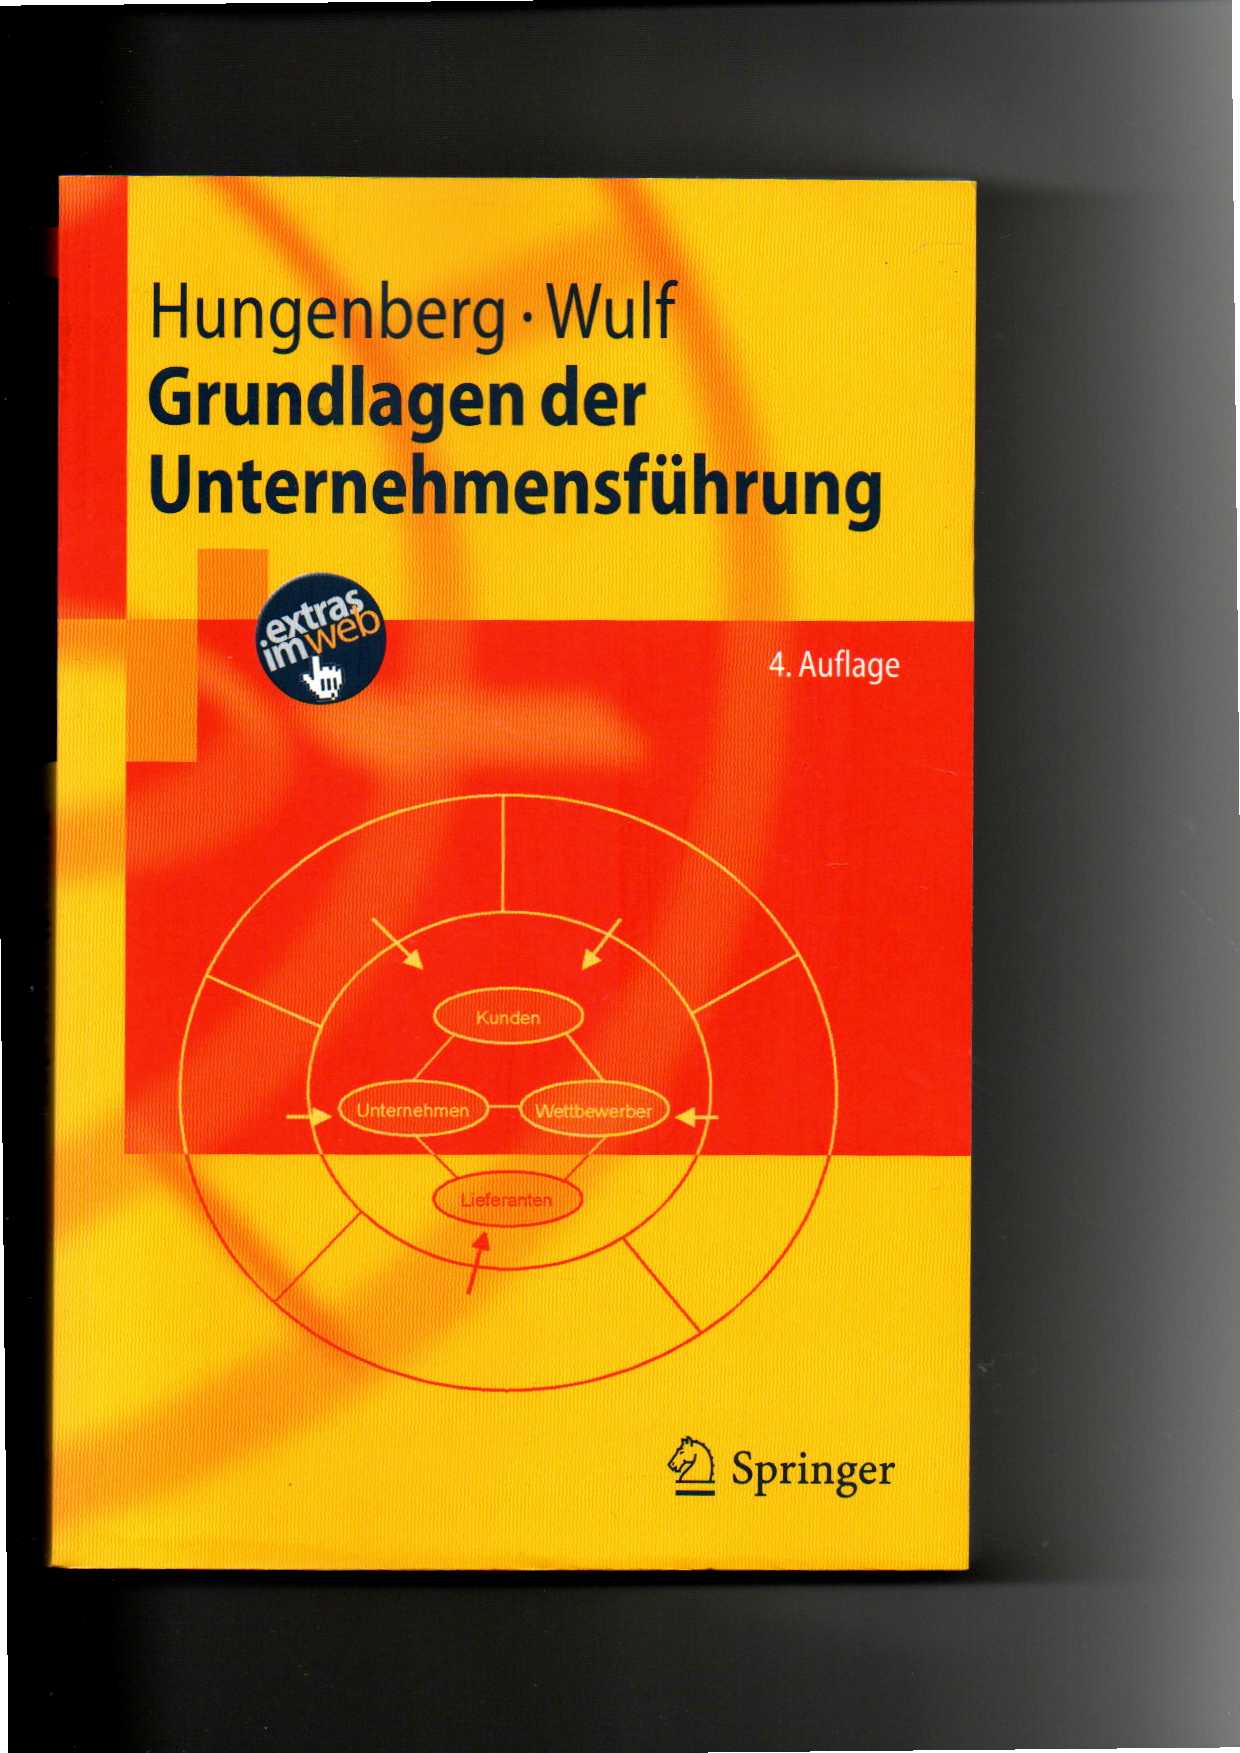 Hungenberg, Wulff, Grundlagen der Unternehmensführung : Einführung Bachelor / 4. Auflage - Hungenberg, Harald und Torsten Wulf